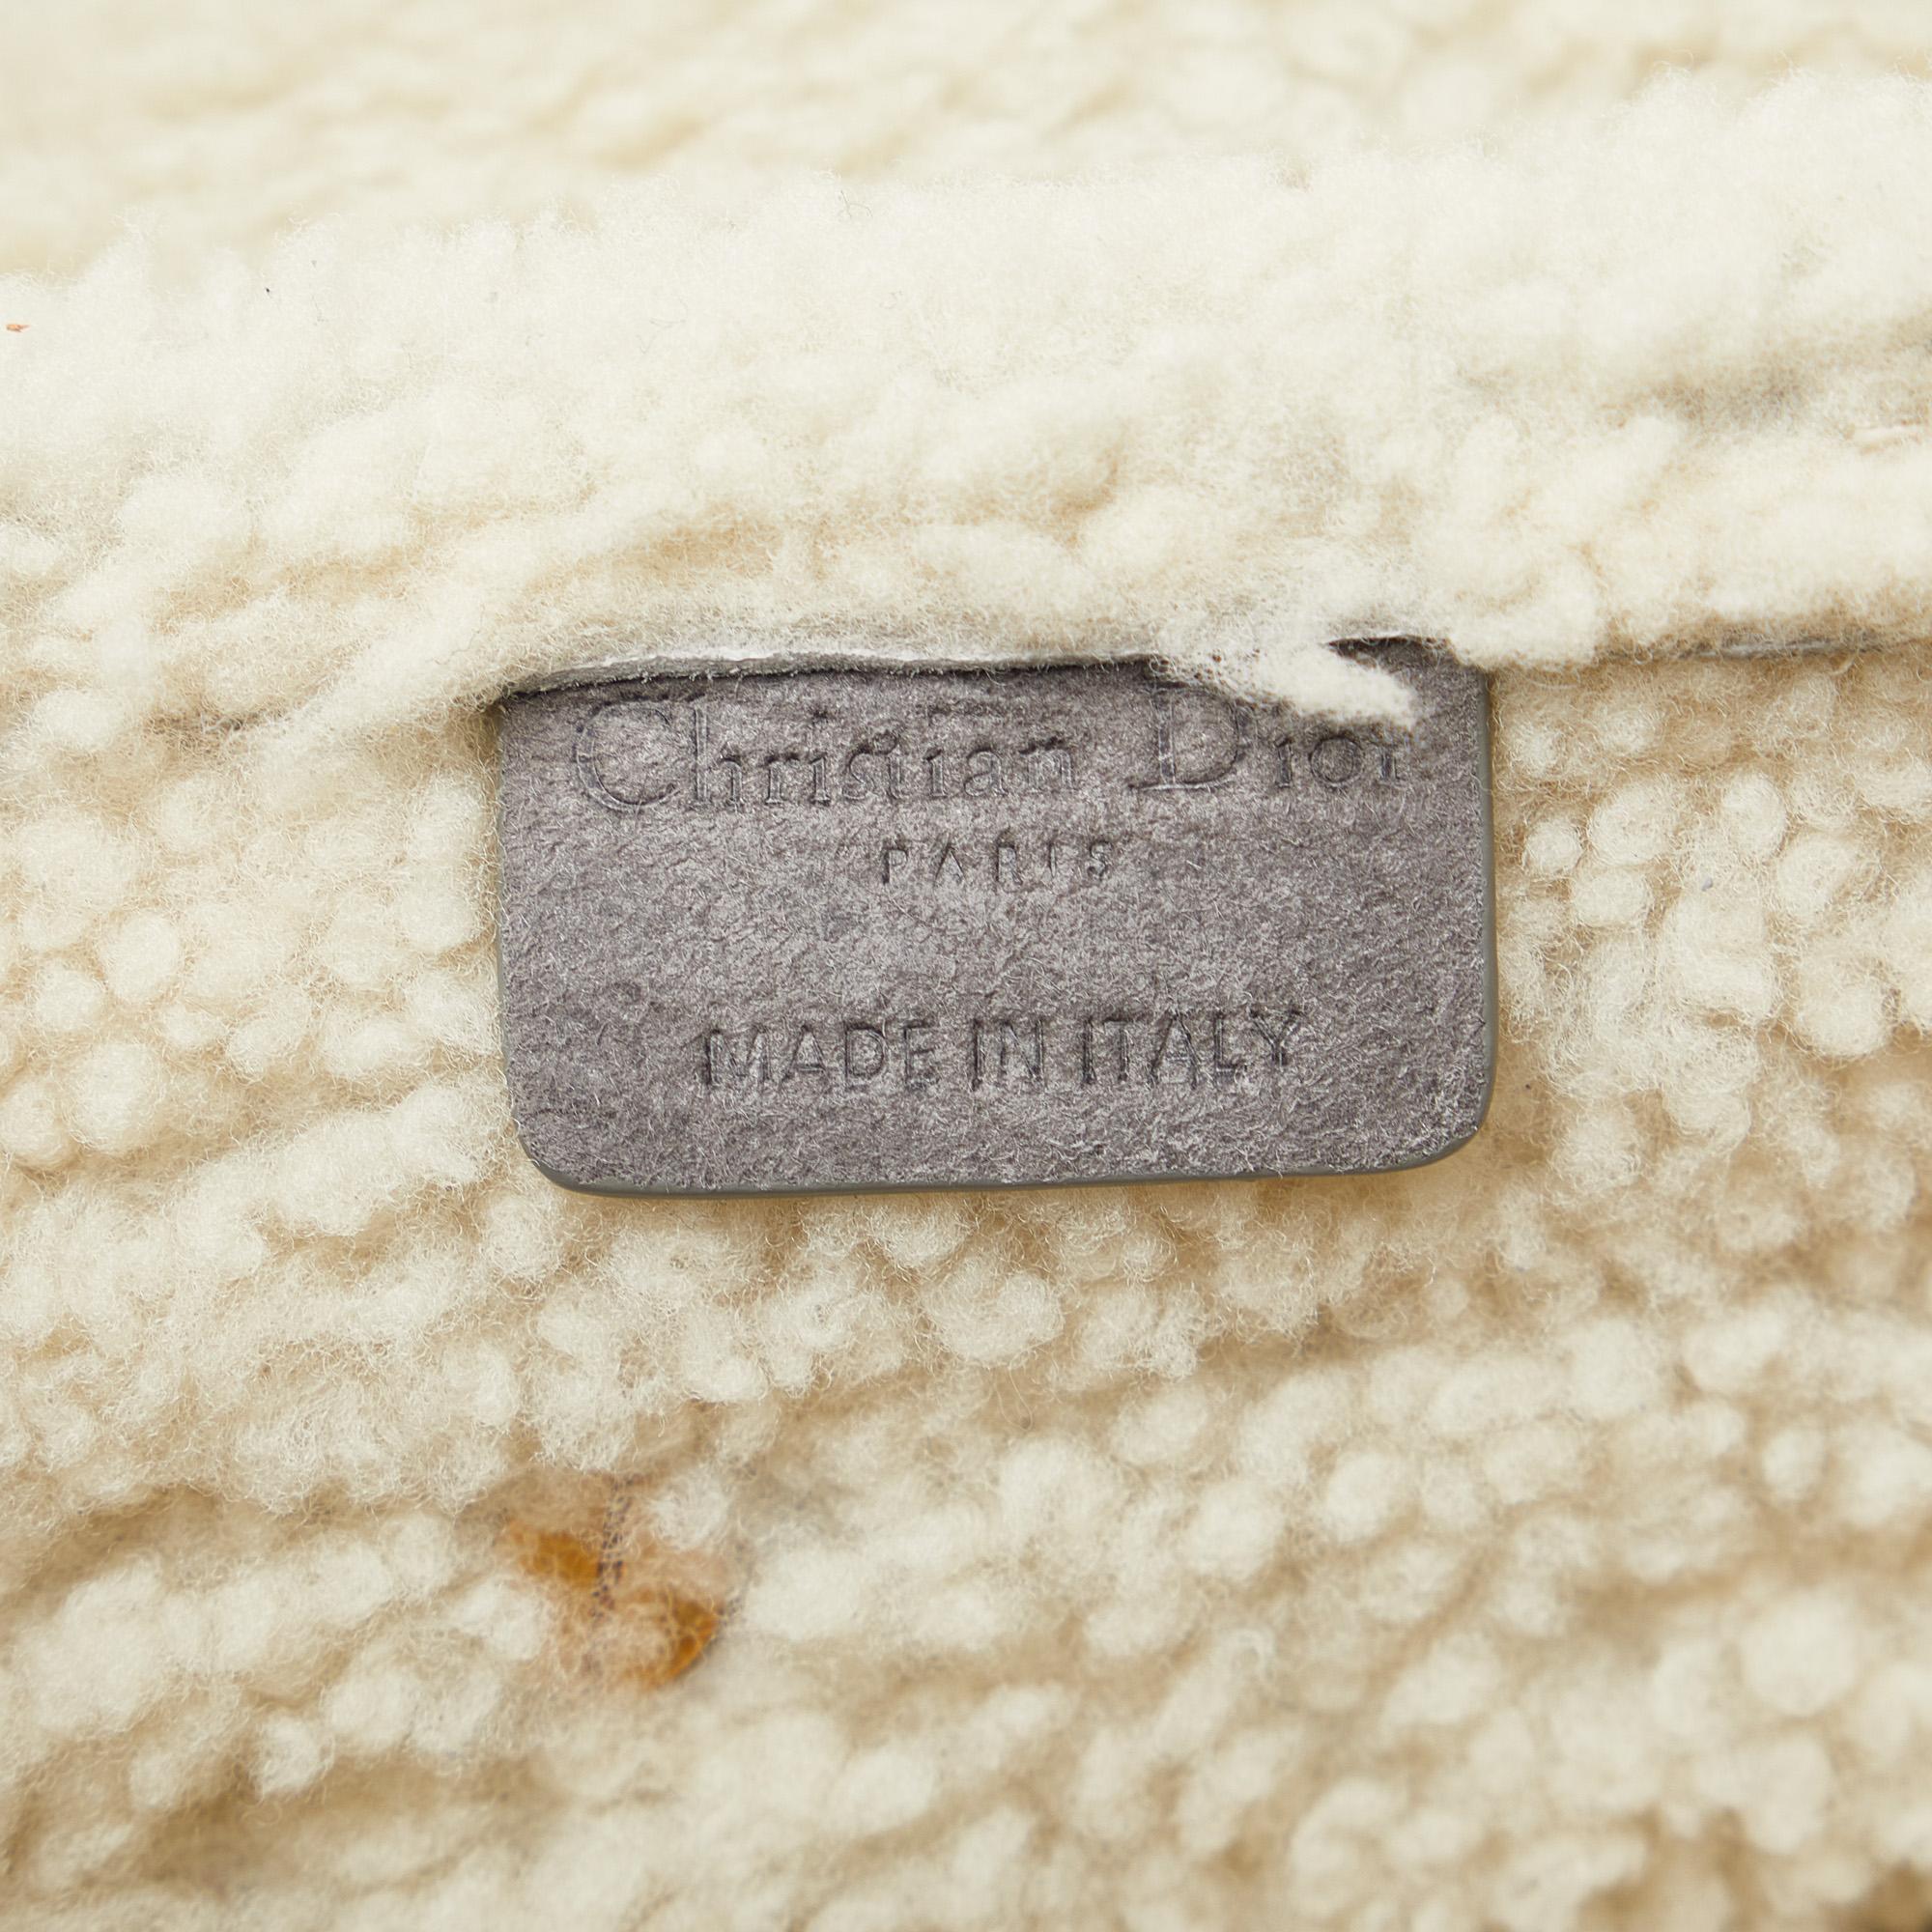 Dior Grey Shearling Saddle Bag